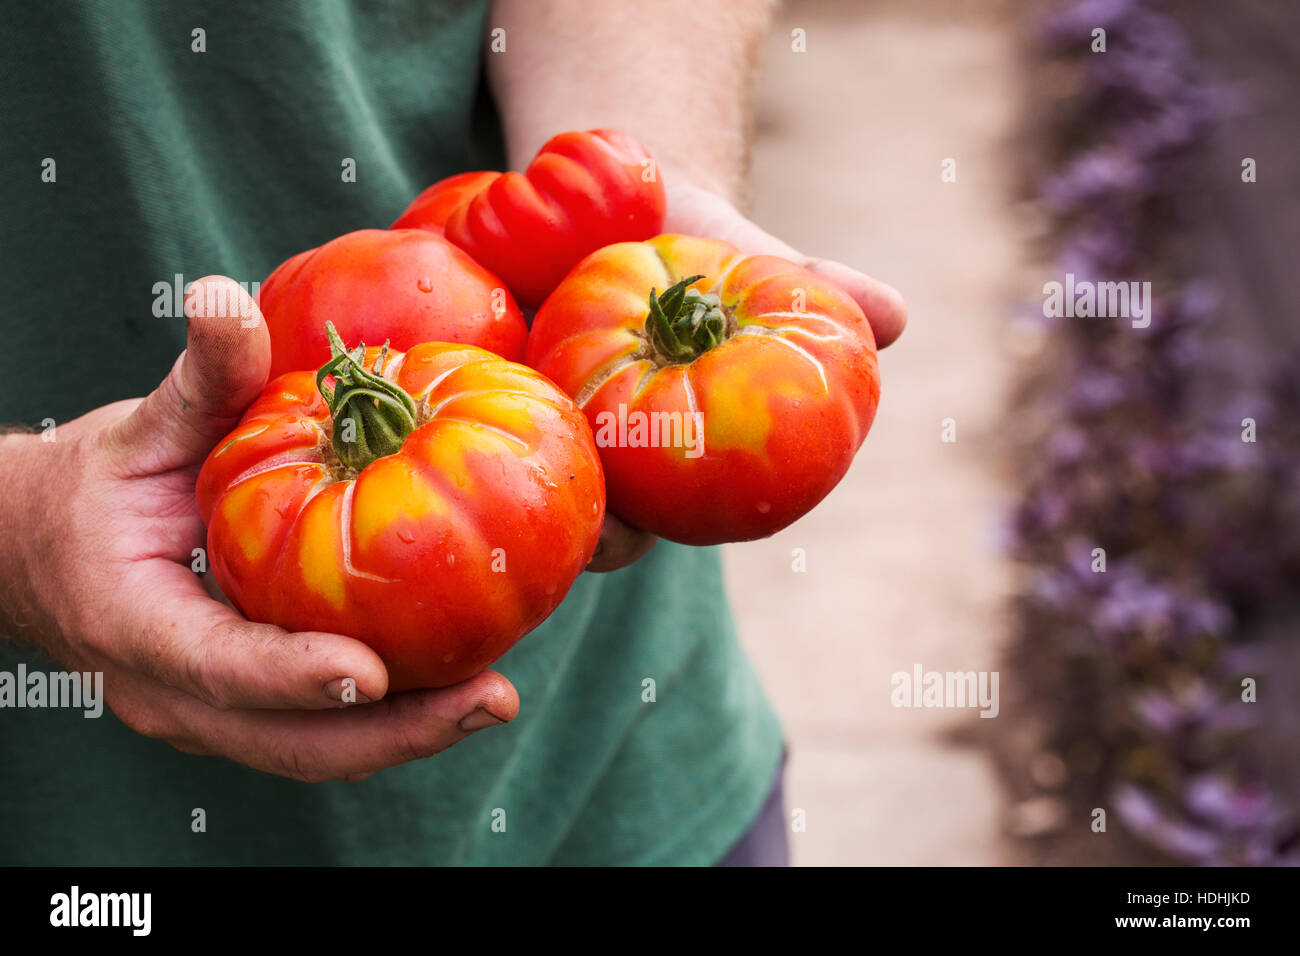 Una persona sosteniendo un puñado de recién elegido grandes tomates Beefsteak seccionados. Foto de stock